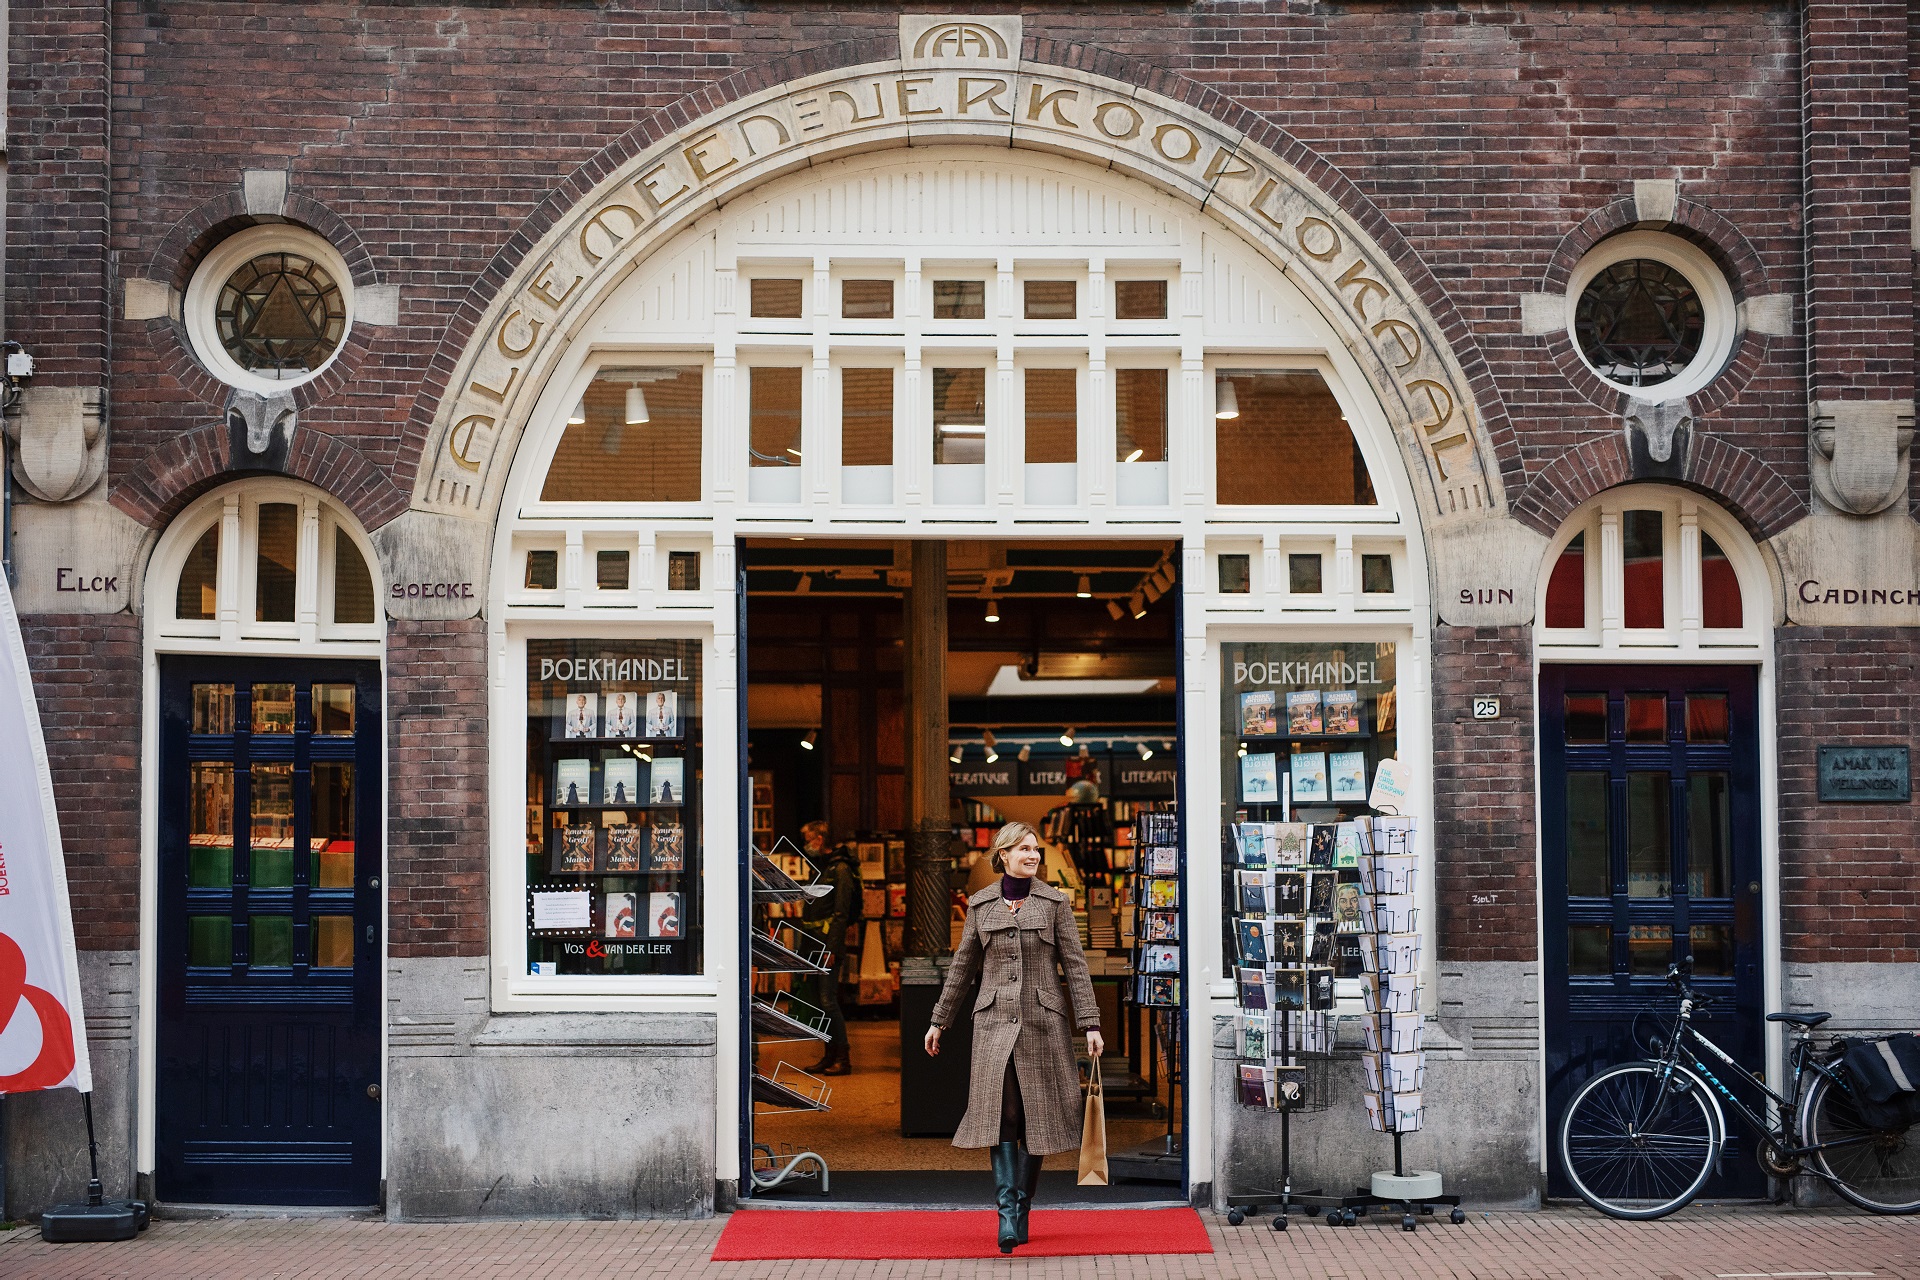 Doe Dordrecht Kadobon winkelen vrouw centrum boekhandel Vos en van der Leer jumbotron